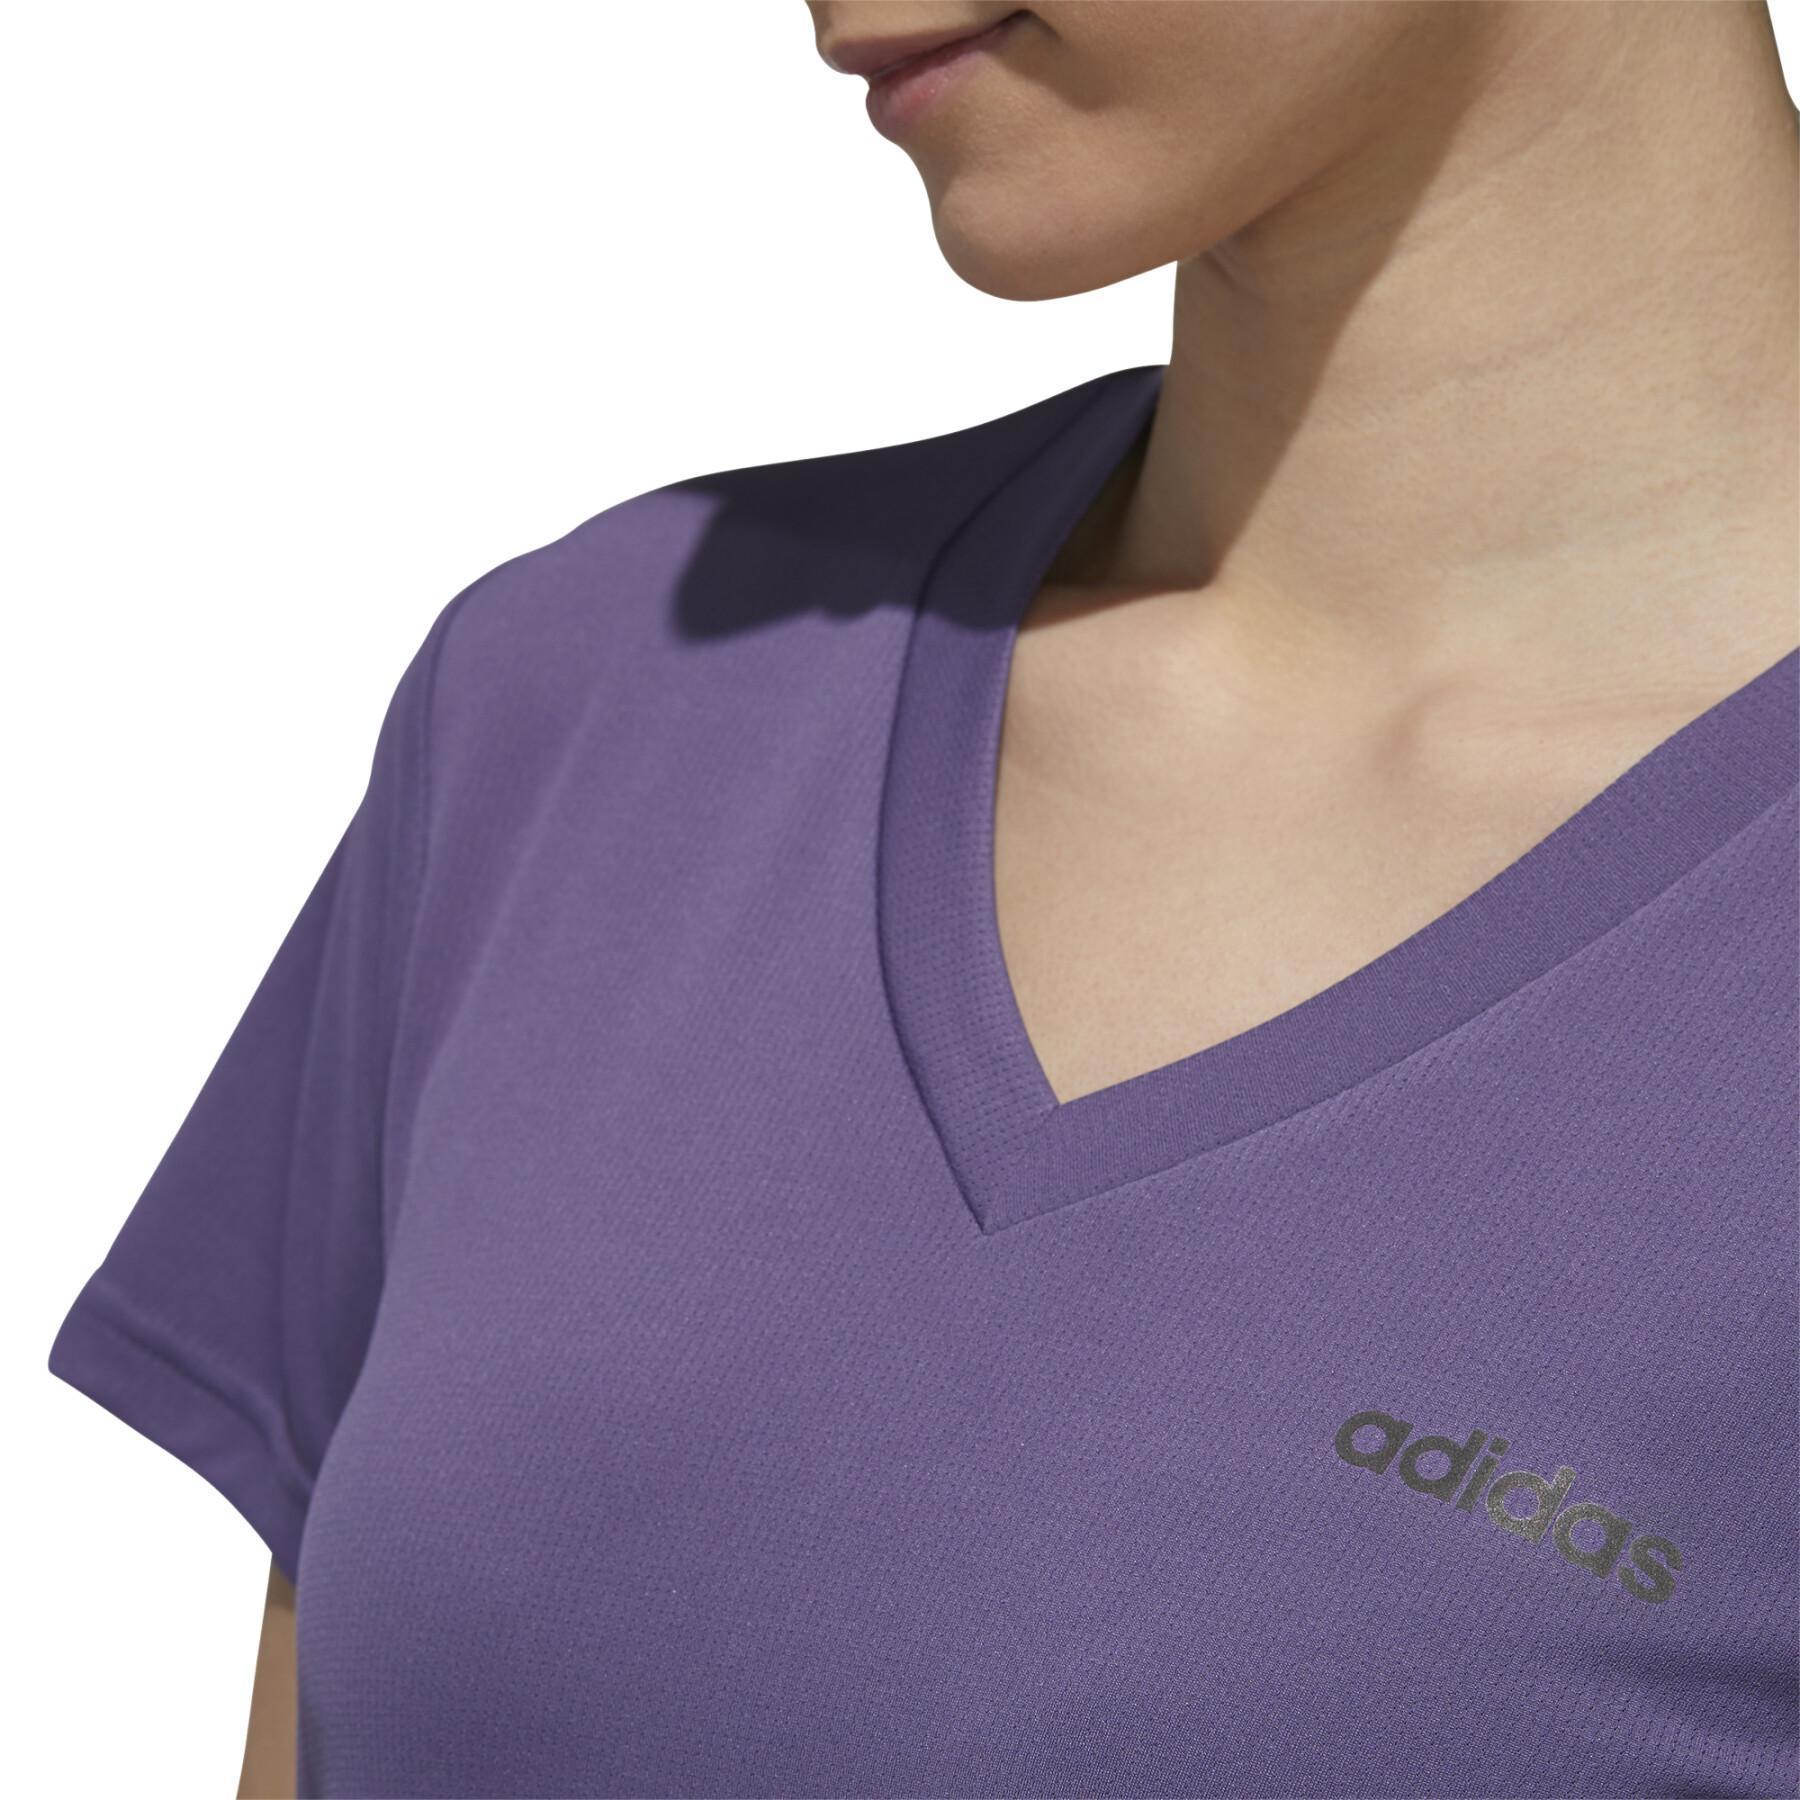 Camiseta feminina adidas Designed 2 Move Solid